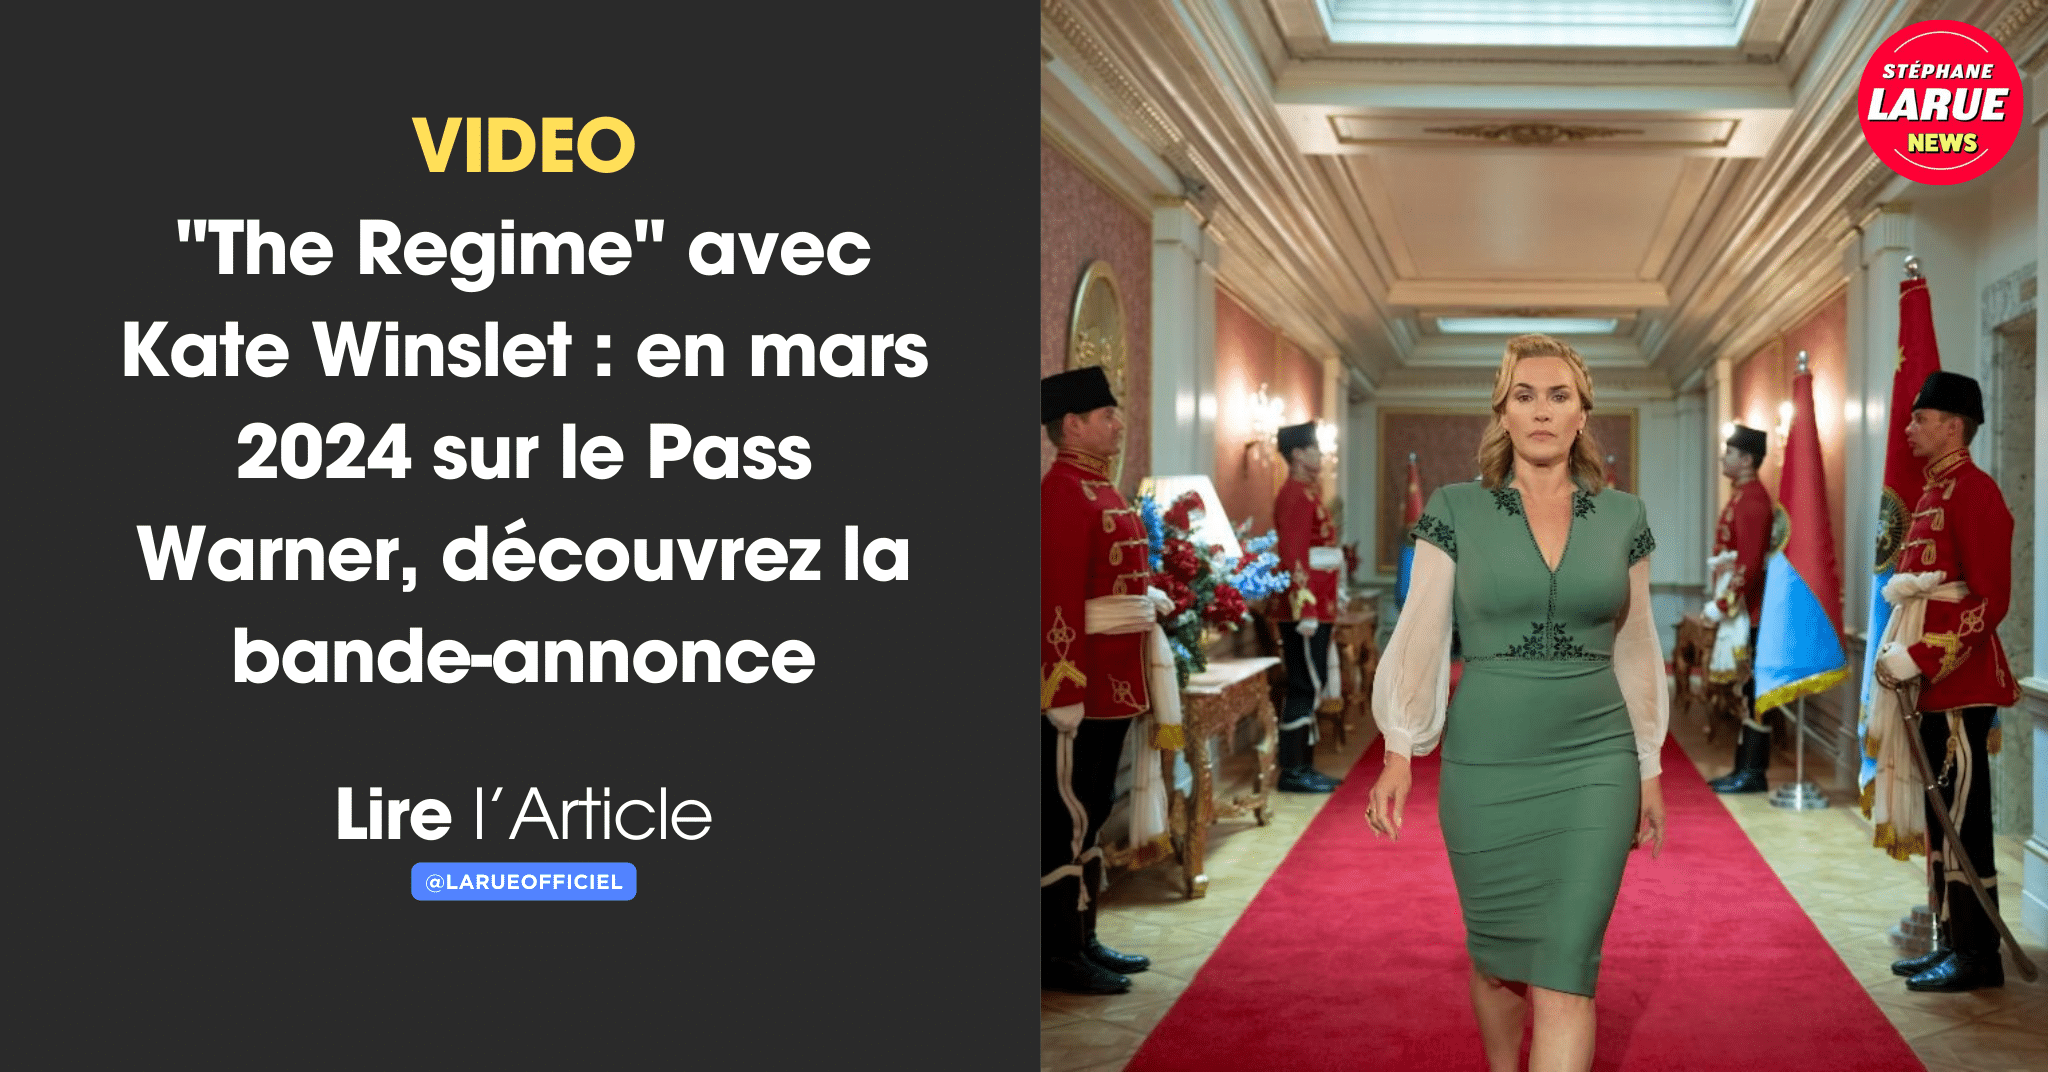 VIDEO "The Regime" avec Kate Winslet : en mars 2024 sur le Pass Warner, découvrez la bande-annonce